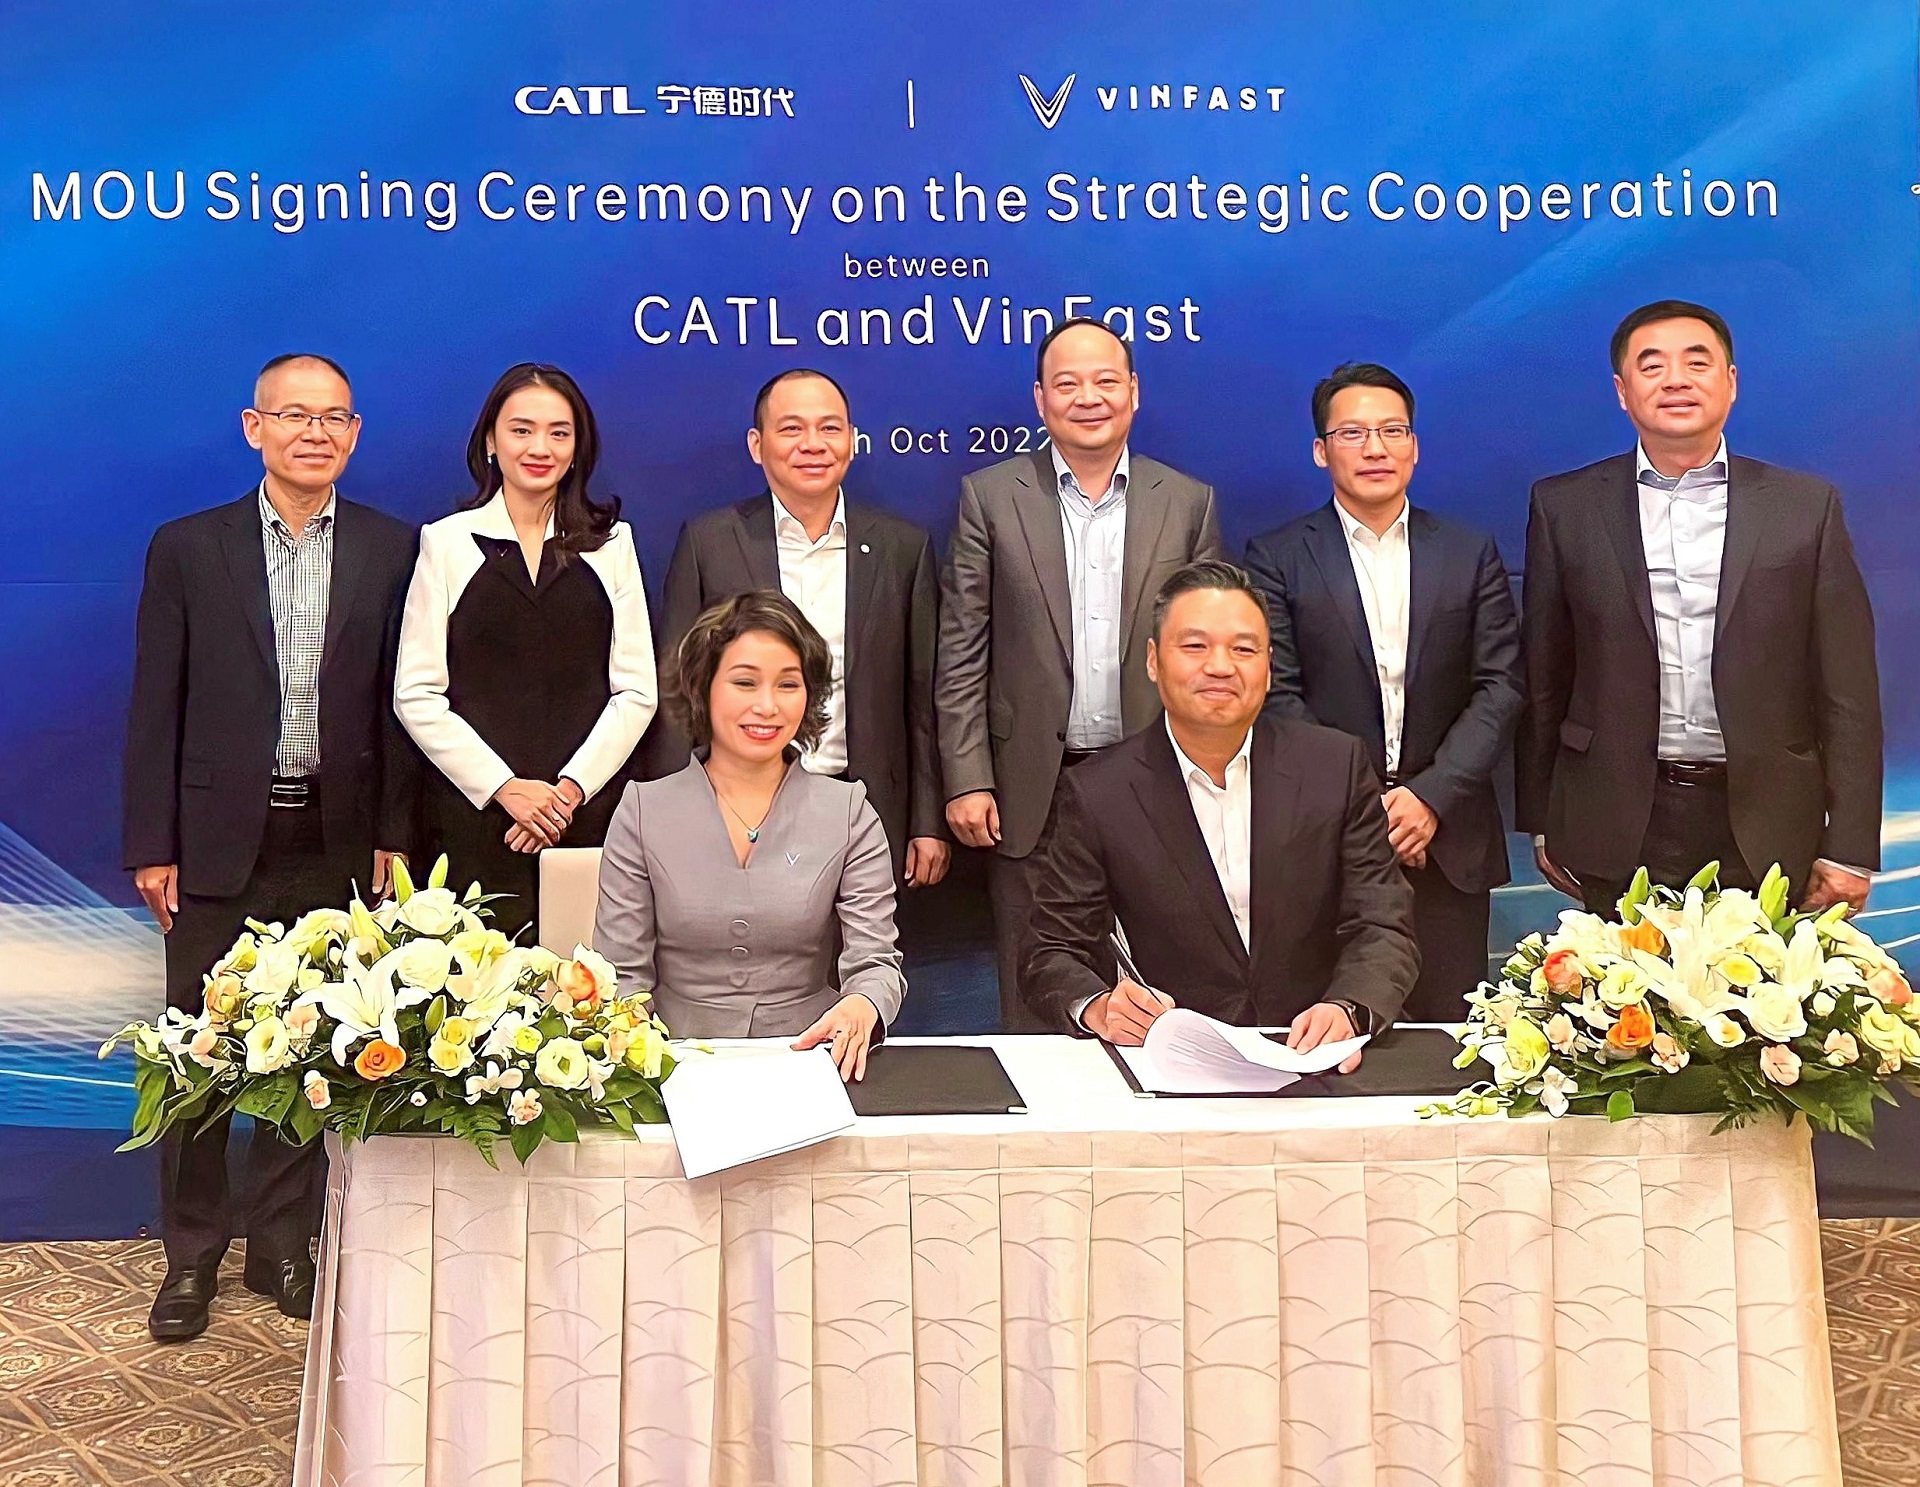 CATL và VinFast hợp tác chiến lược toàn cầu, thúc đẩy di chuyển điện hóa